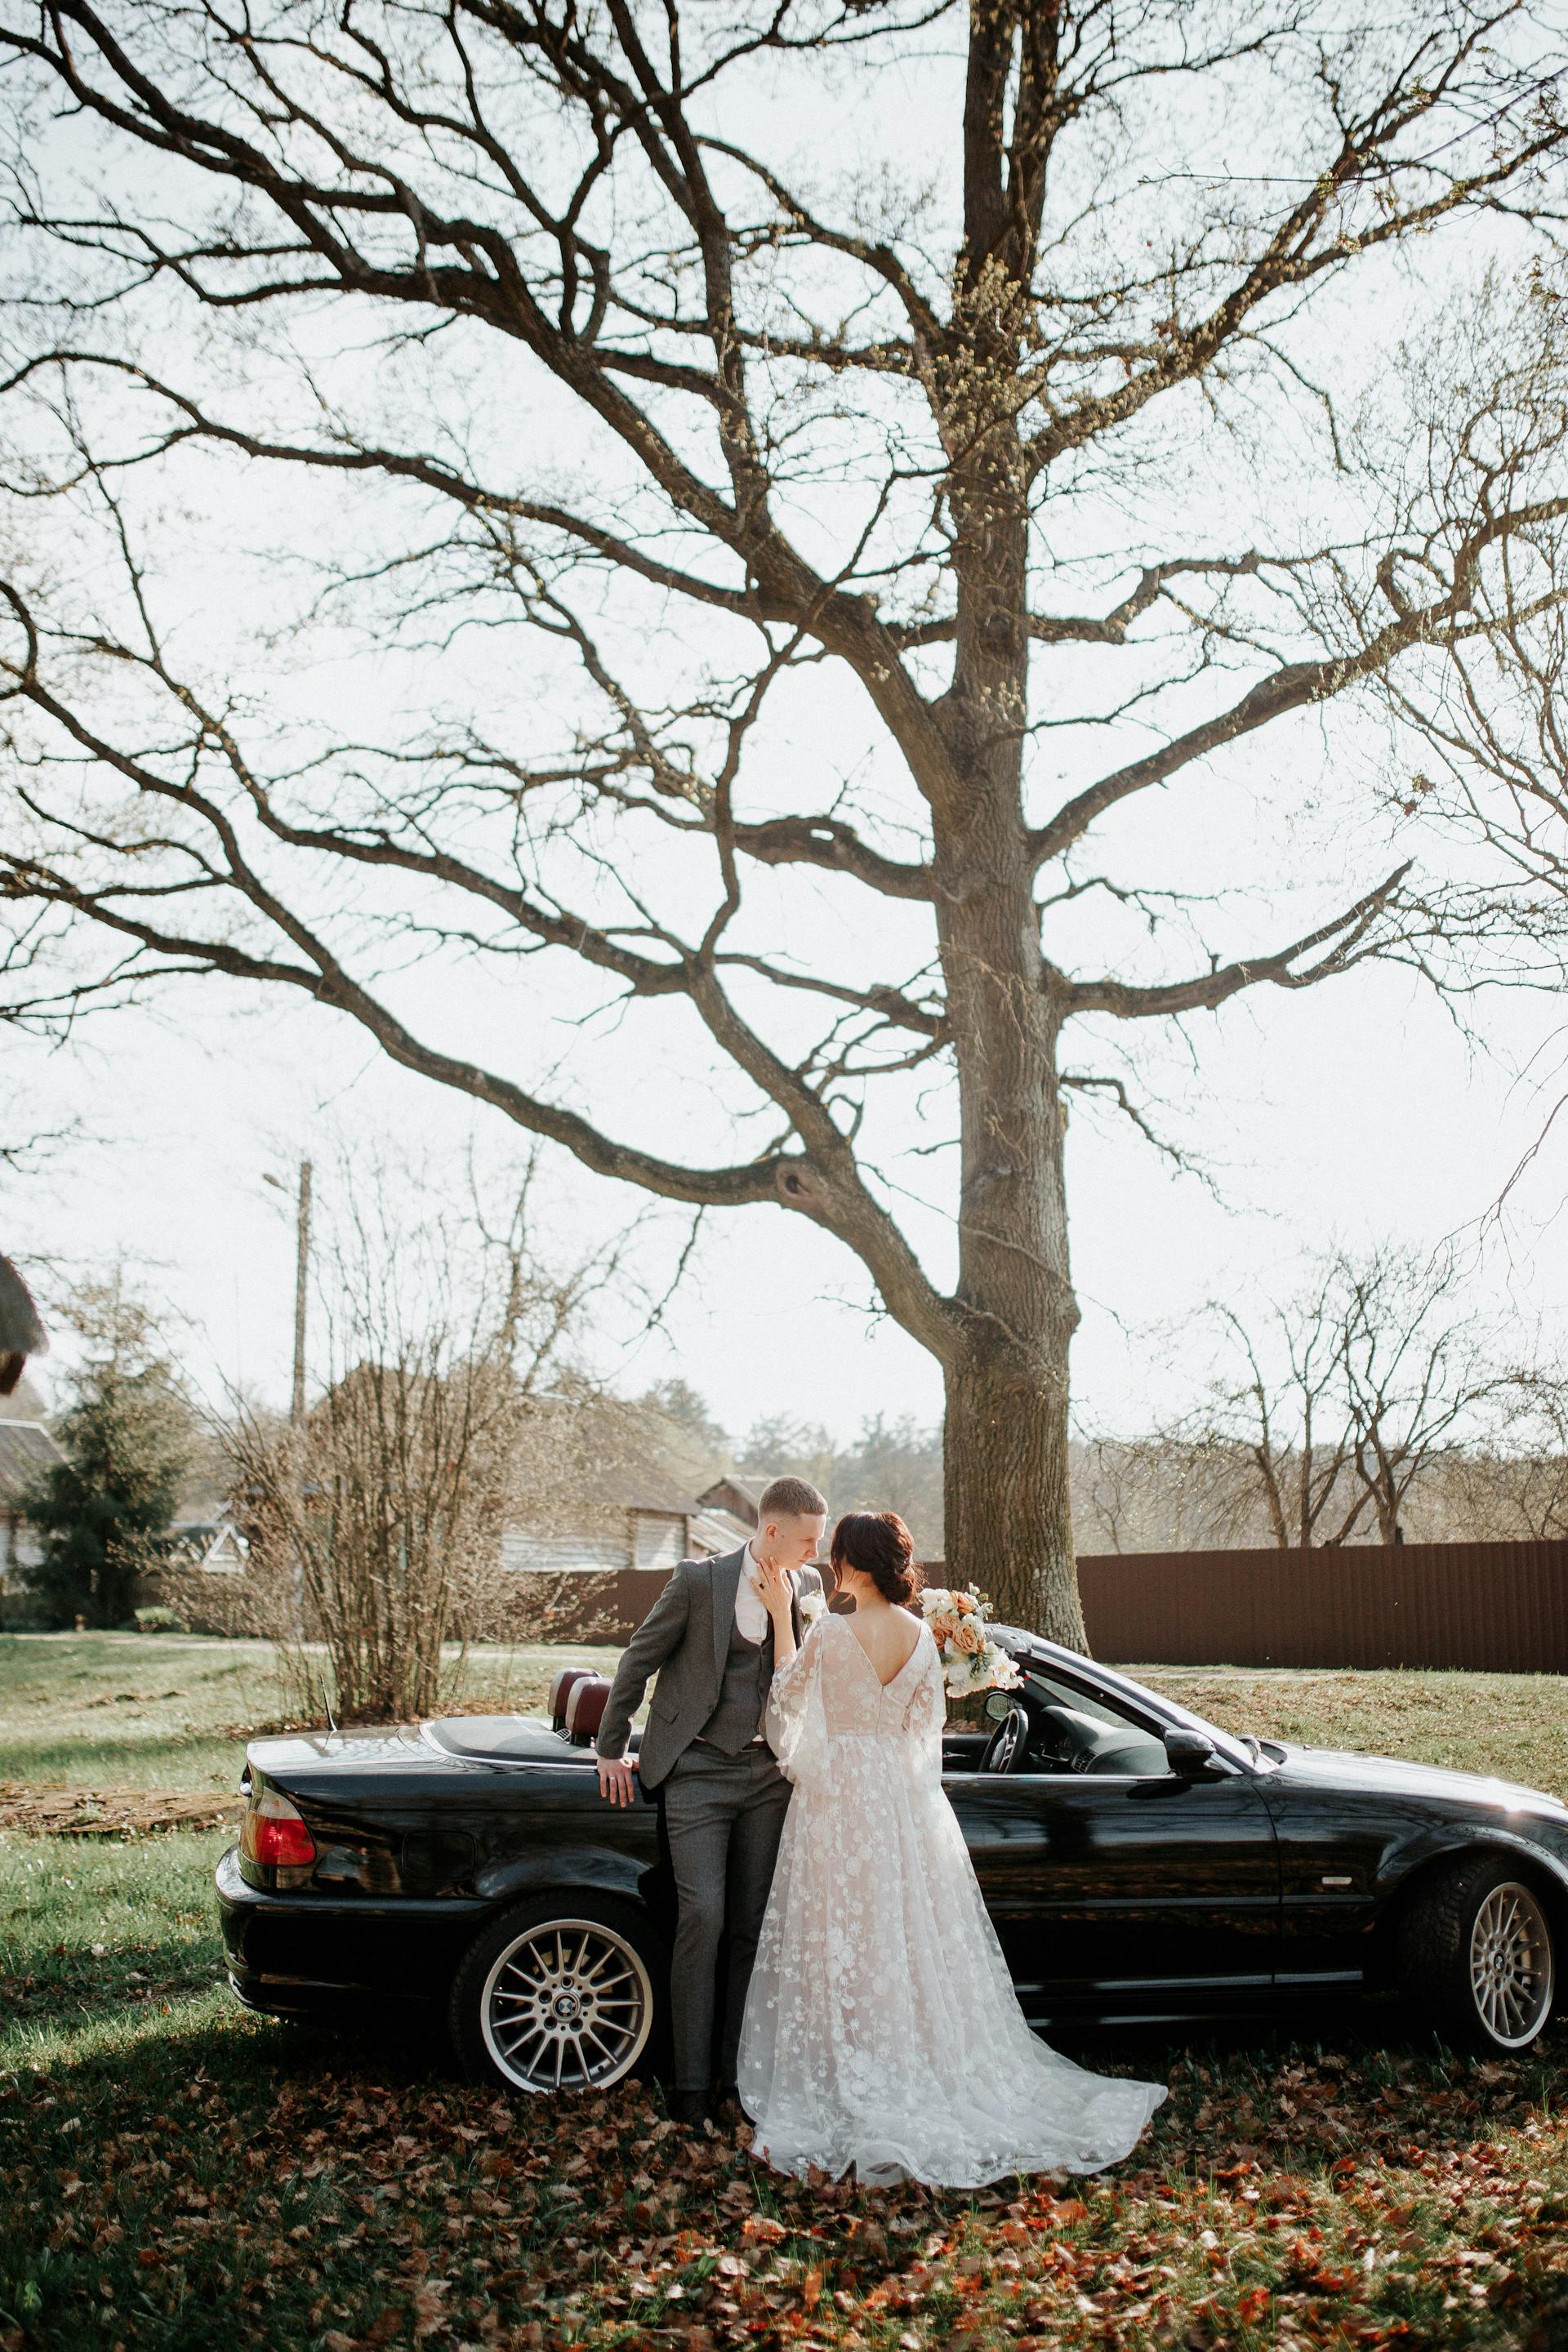 Braut und Bräutigam stehen neben einem Auto | Quelle: Pexels